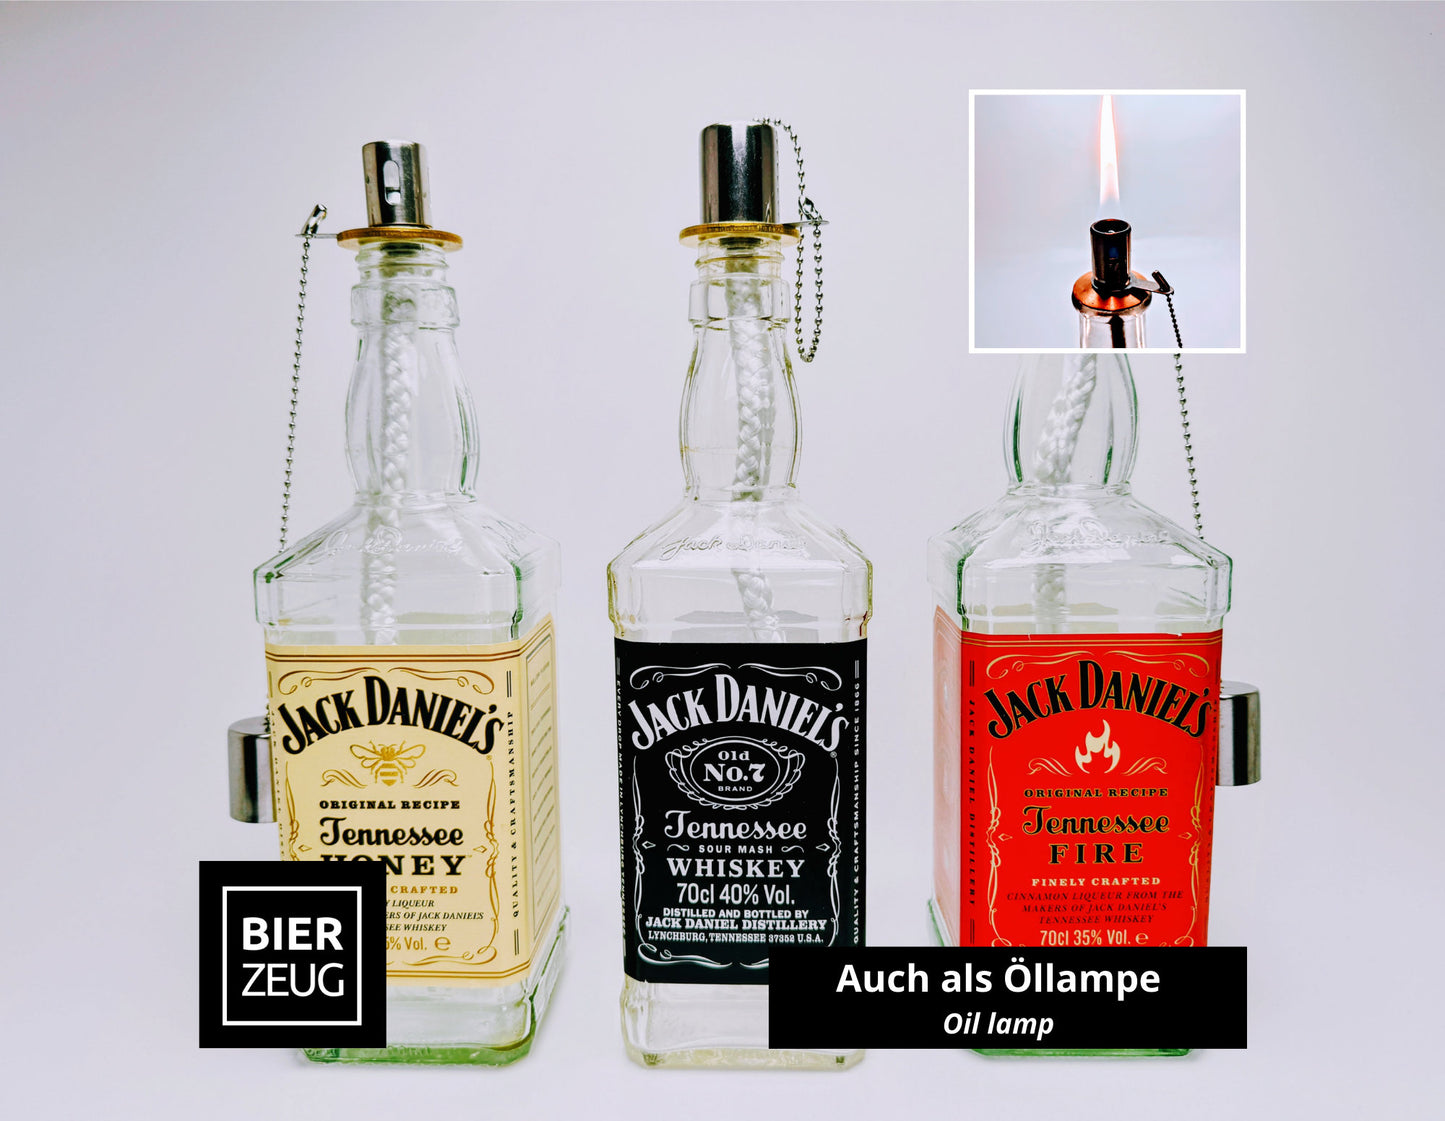 Whisky-Seifenspender “Jacky” | Upcycling Pumpspender aus Jack Daniels Flaschen | Nachfüllbar mit Seife, Spüli, Bartöl | Bad Deko Geschenk